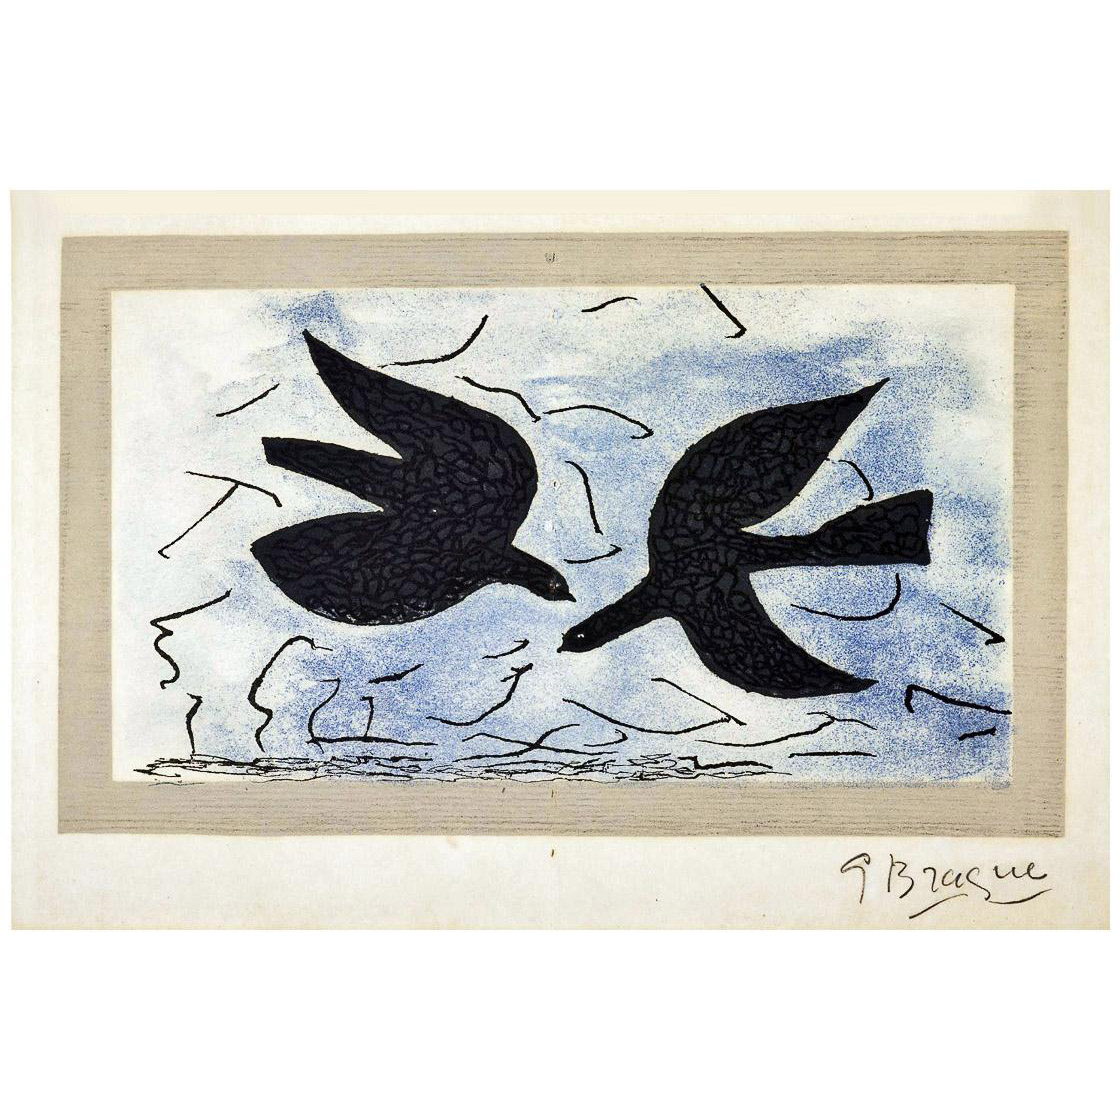 Georges Braque. Les deux oiseaux. 1956. National Gallery Edinburgh